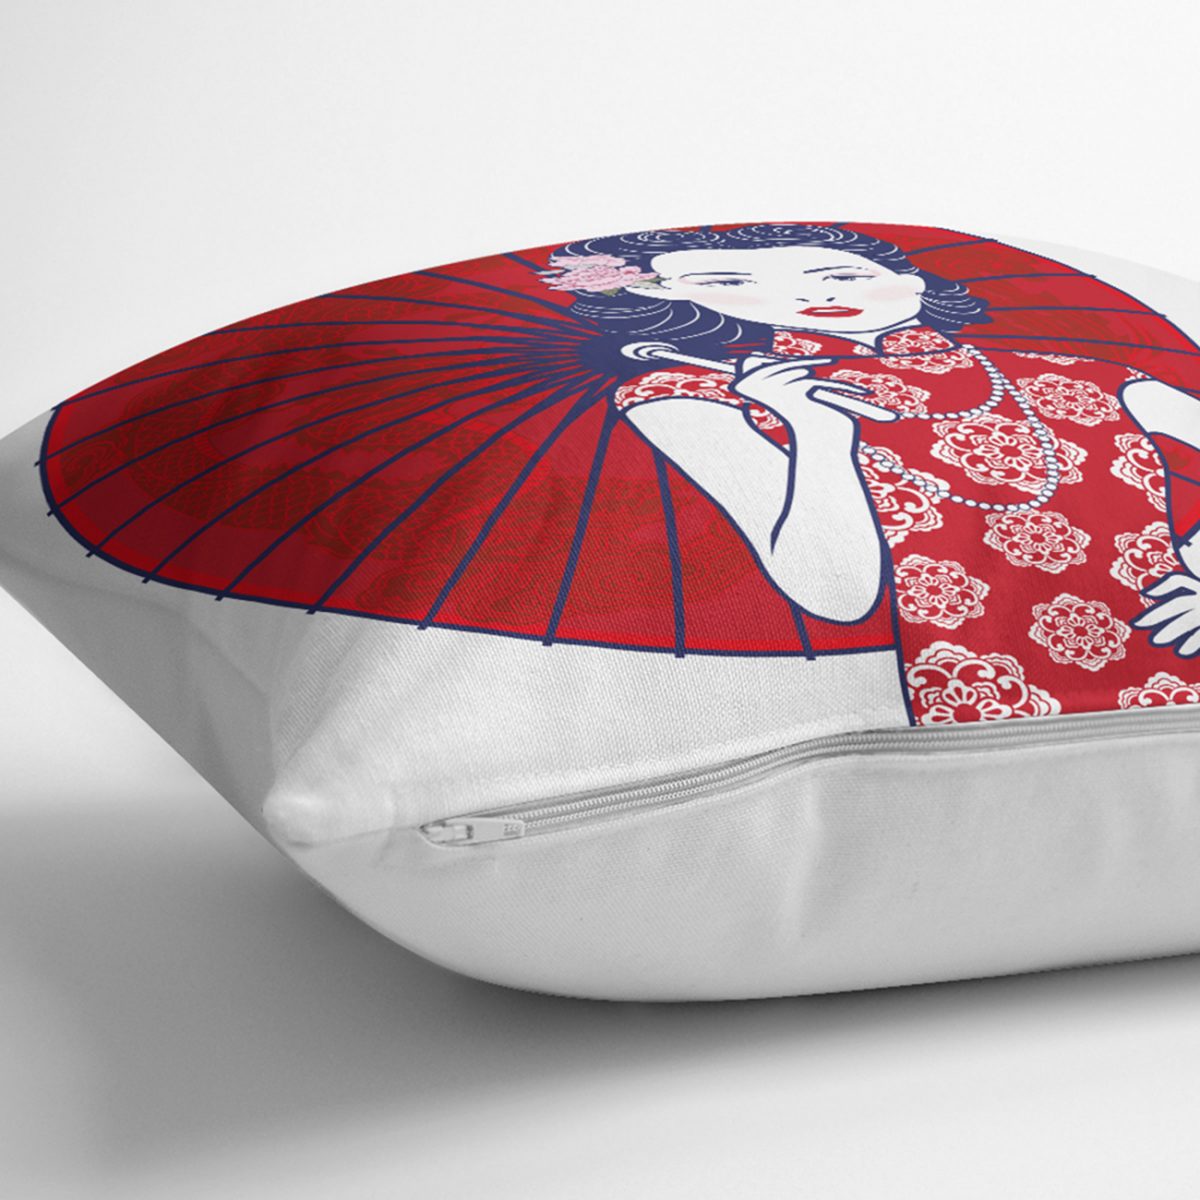 Sırtında Kırmızı Şemsiyeli Japon Kadın Motifli Kırlent Kılıfı Realhomes